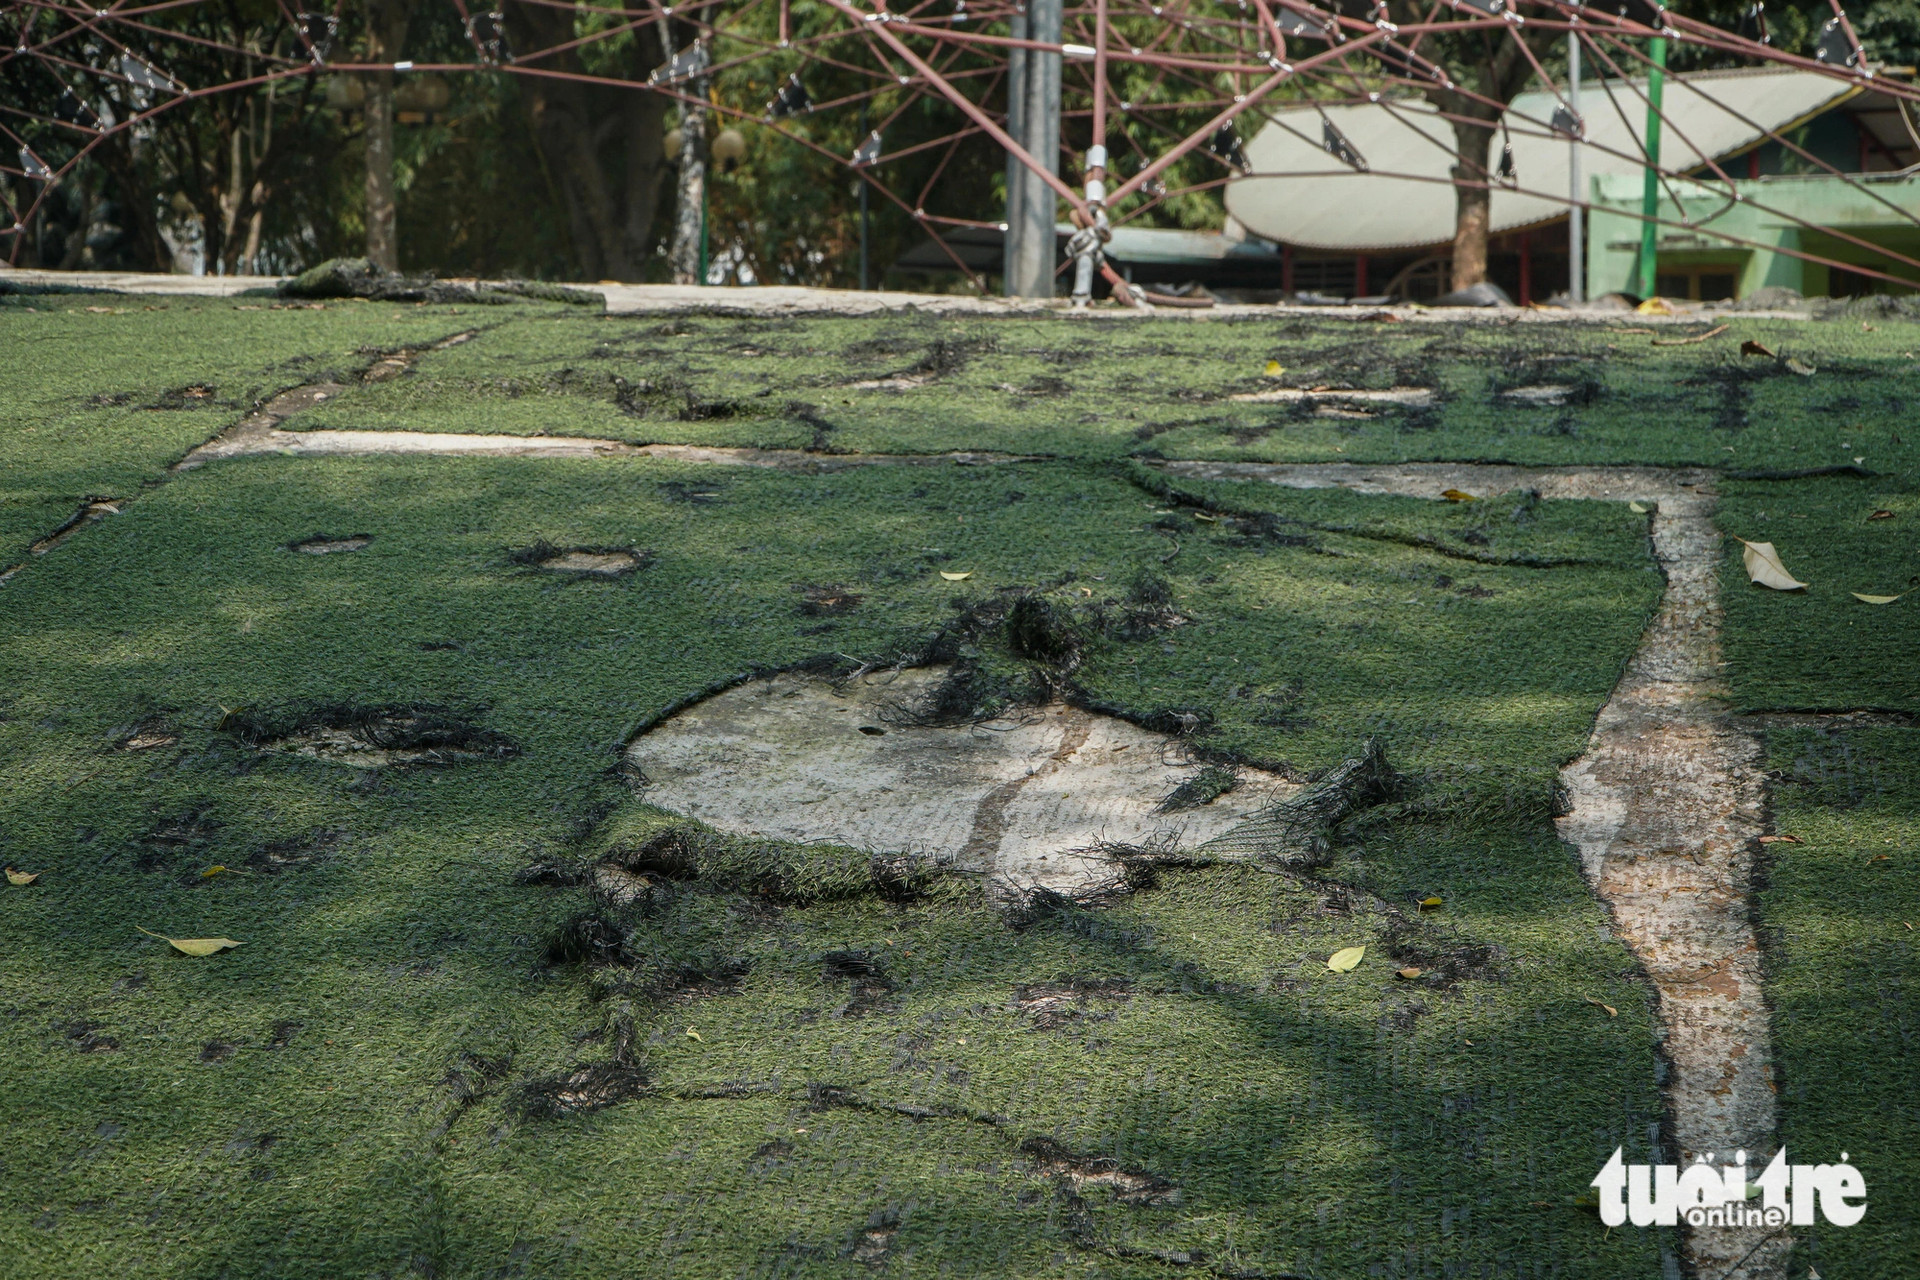 Phần cỏ nhân tạo tại công viên Cầu Giấy bong tróc, lộ ra những mảng bê tông lớn - Ảnh: PHẠM TUẤN